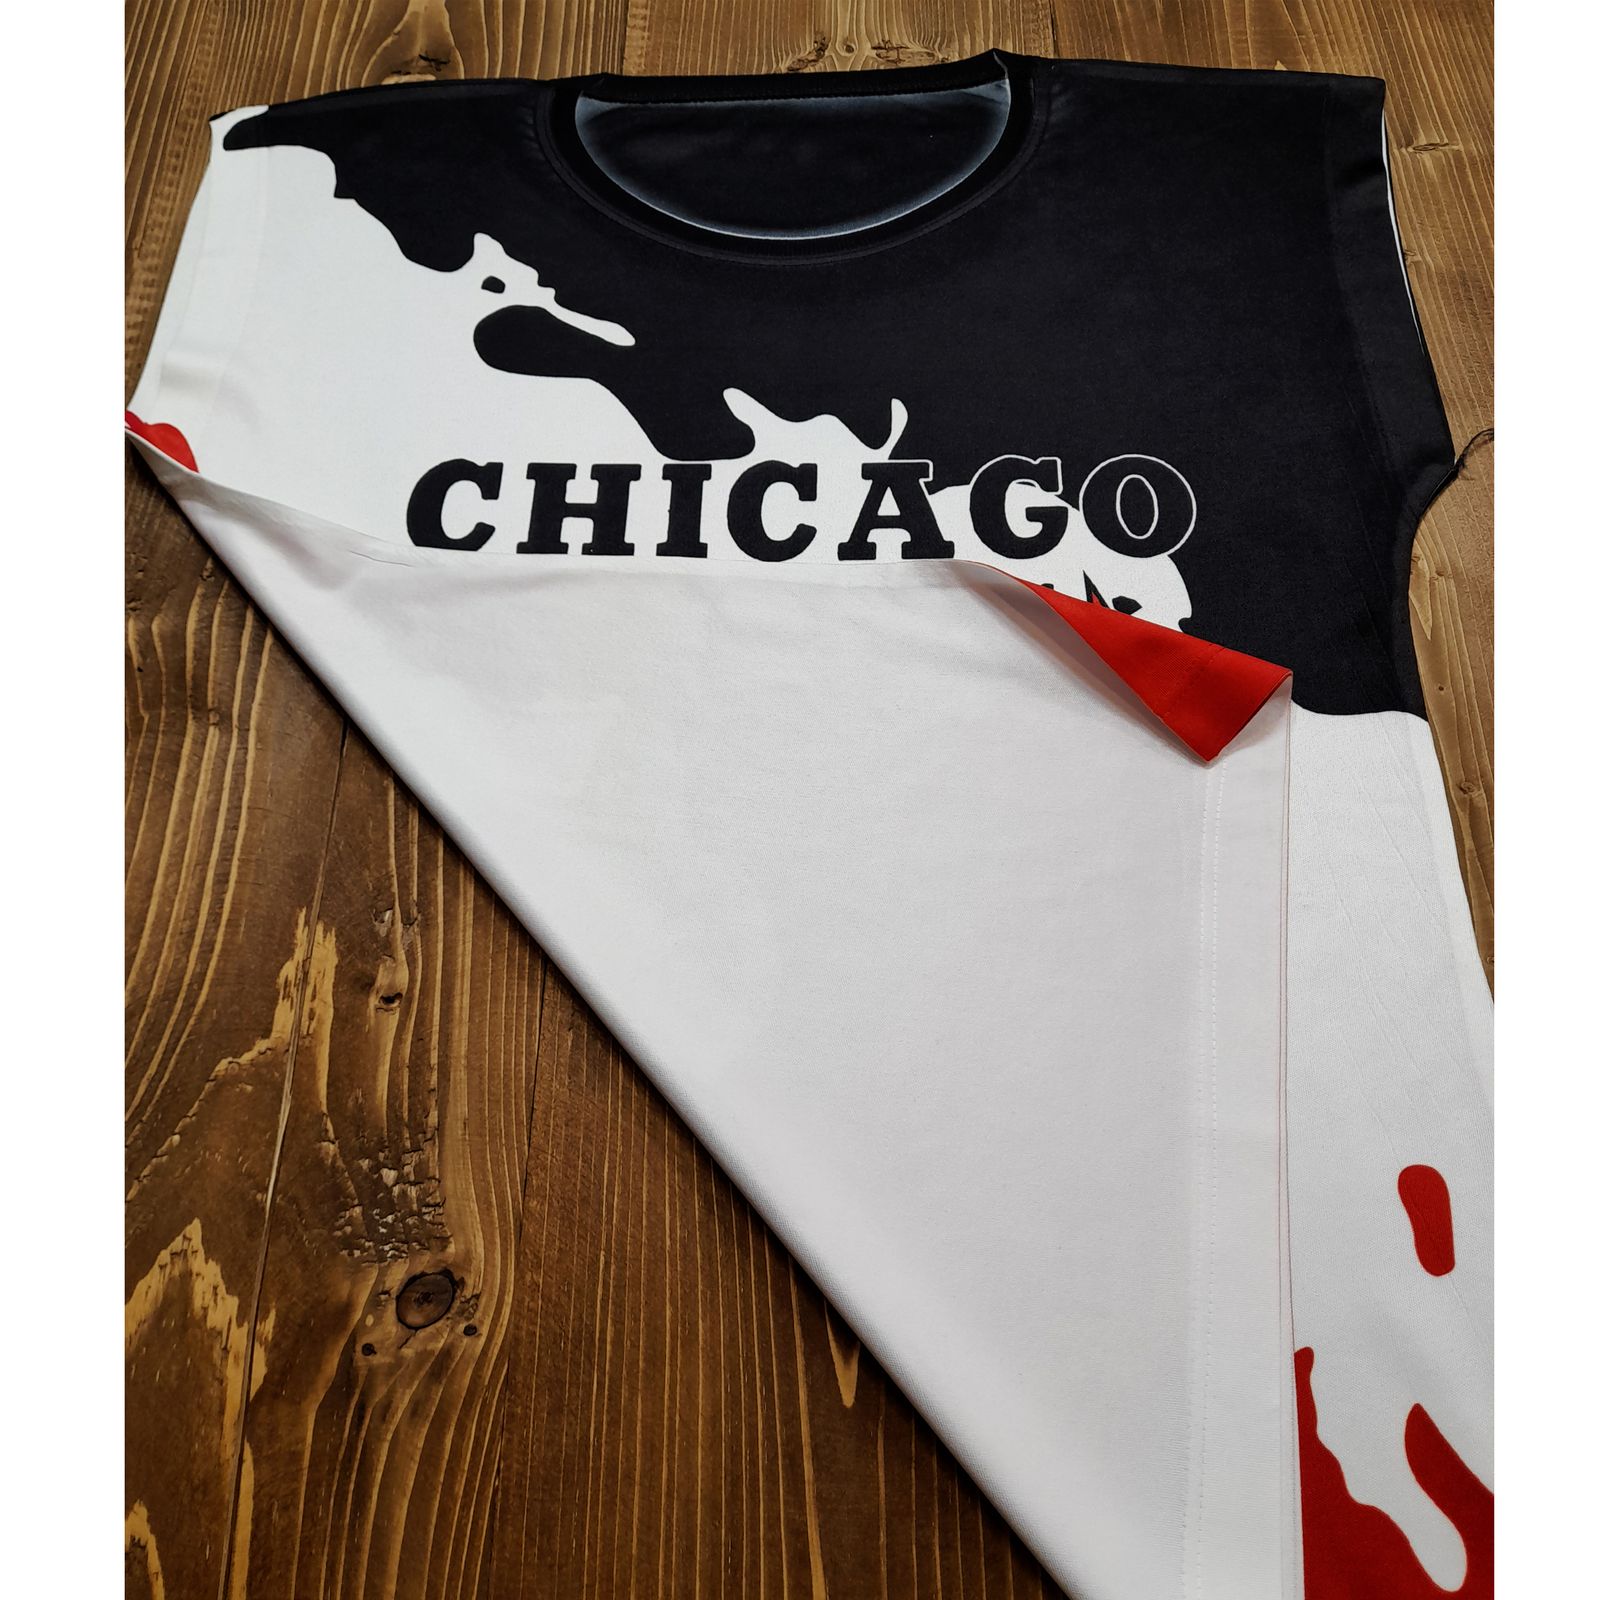  تاپ ورزشی پسرانه طرح CHICAGO BULLS کد CH01 -  - 2